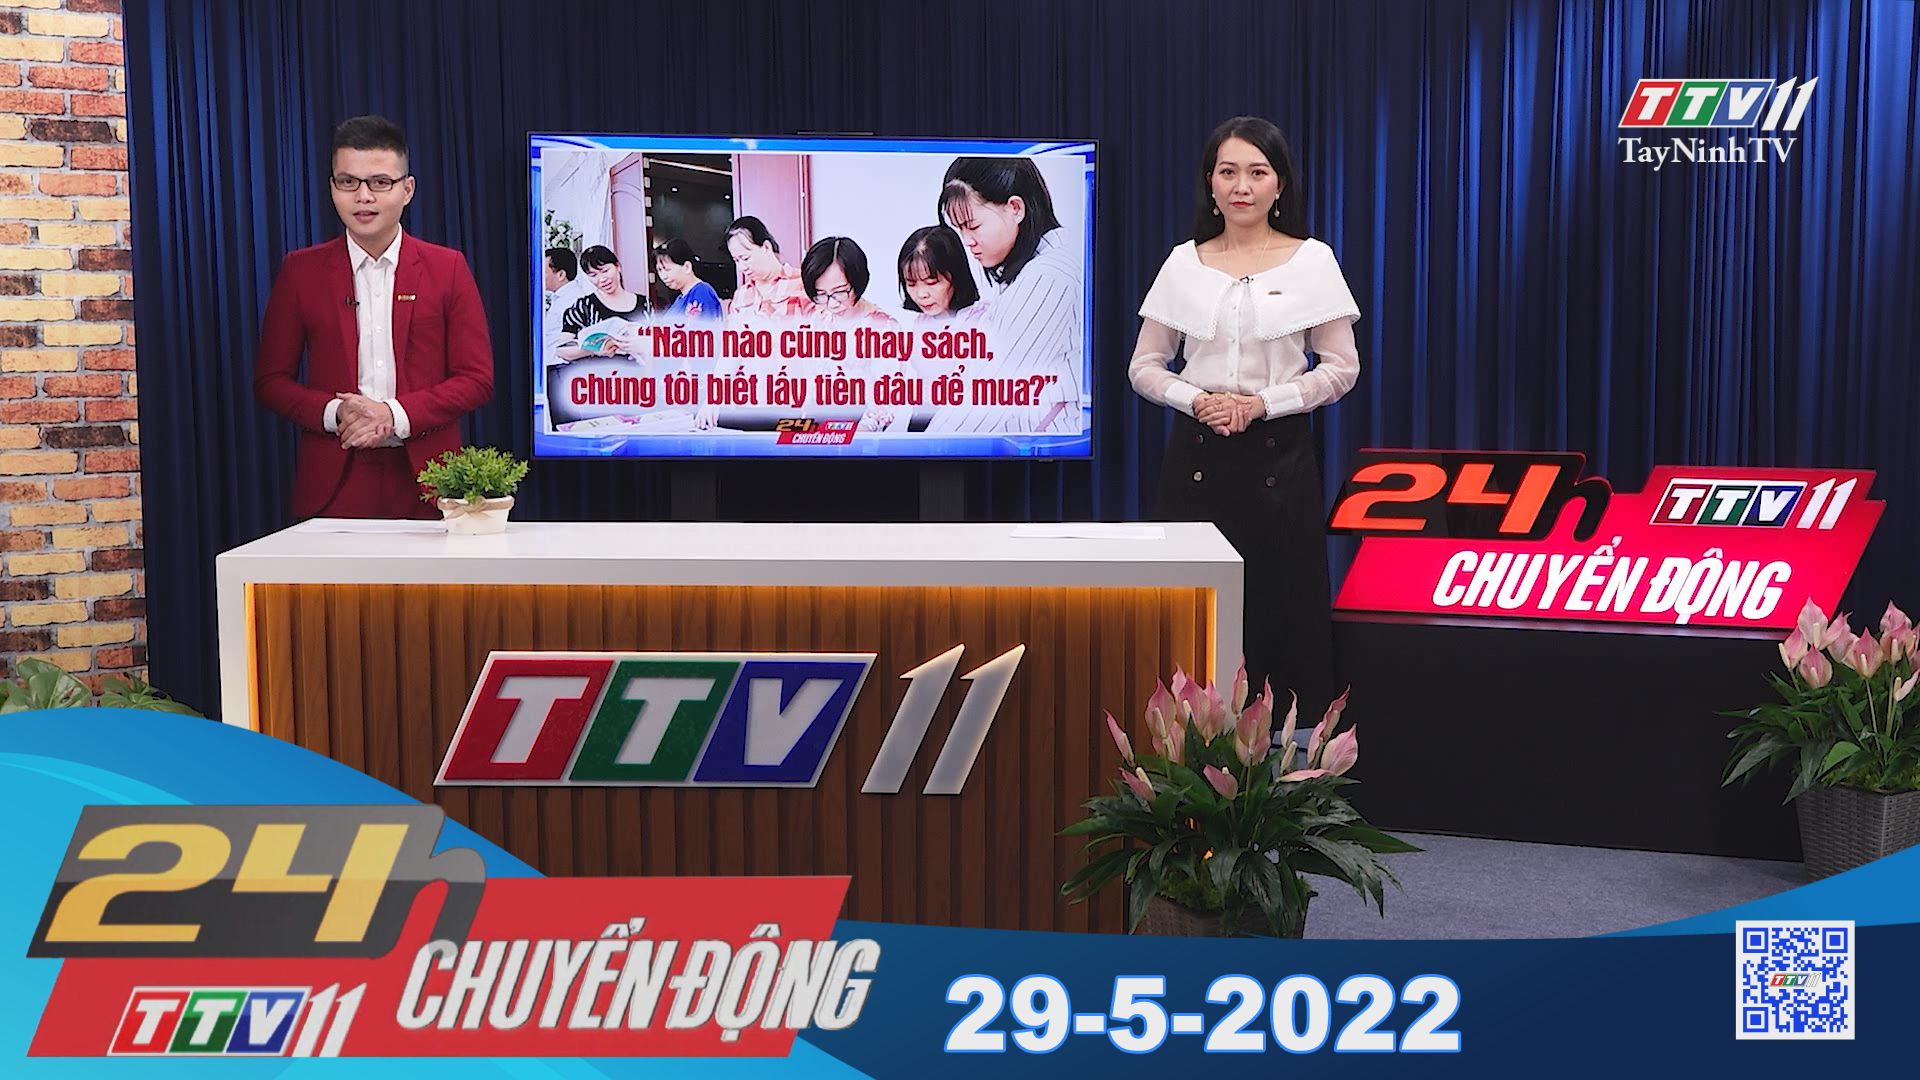 24h Chuyển động 29-5-2022 | Tin tức hôm nay | TayNinhTV